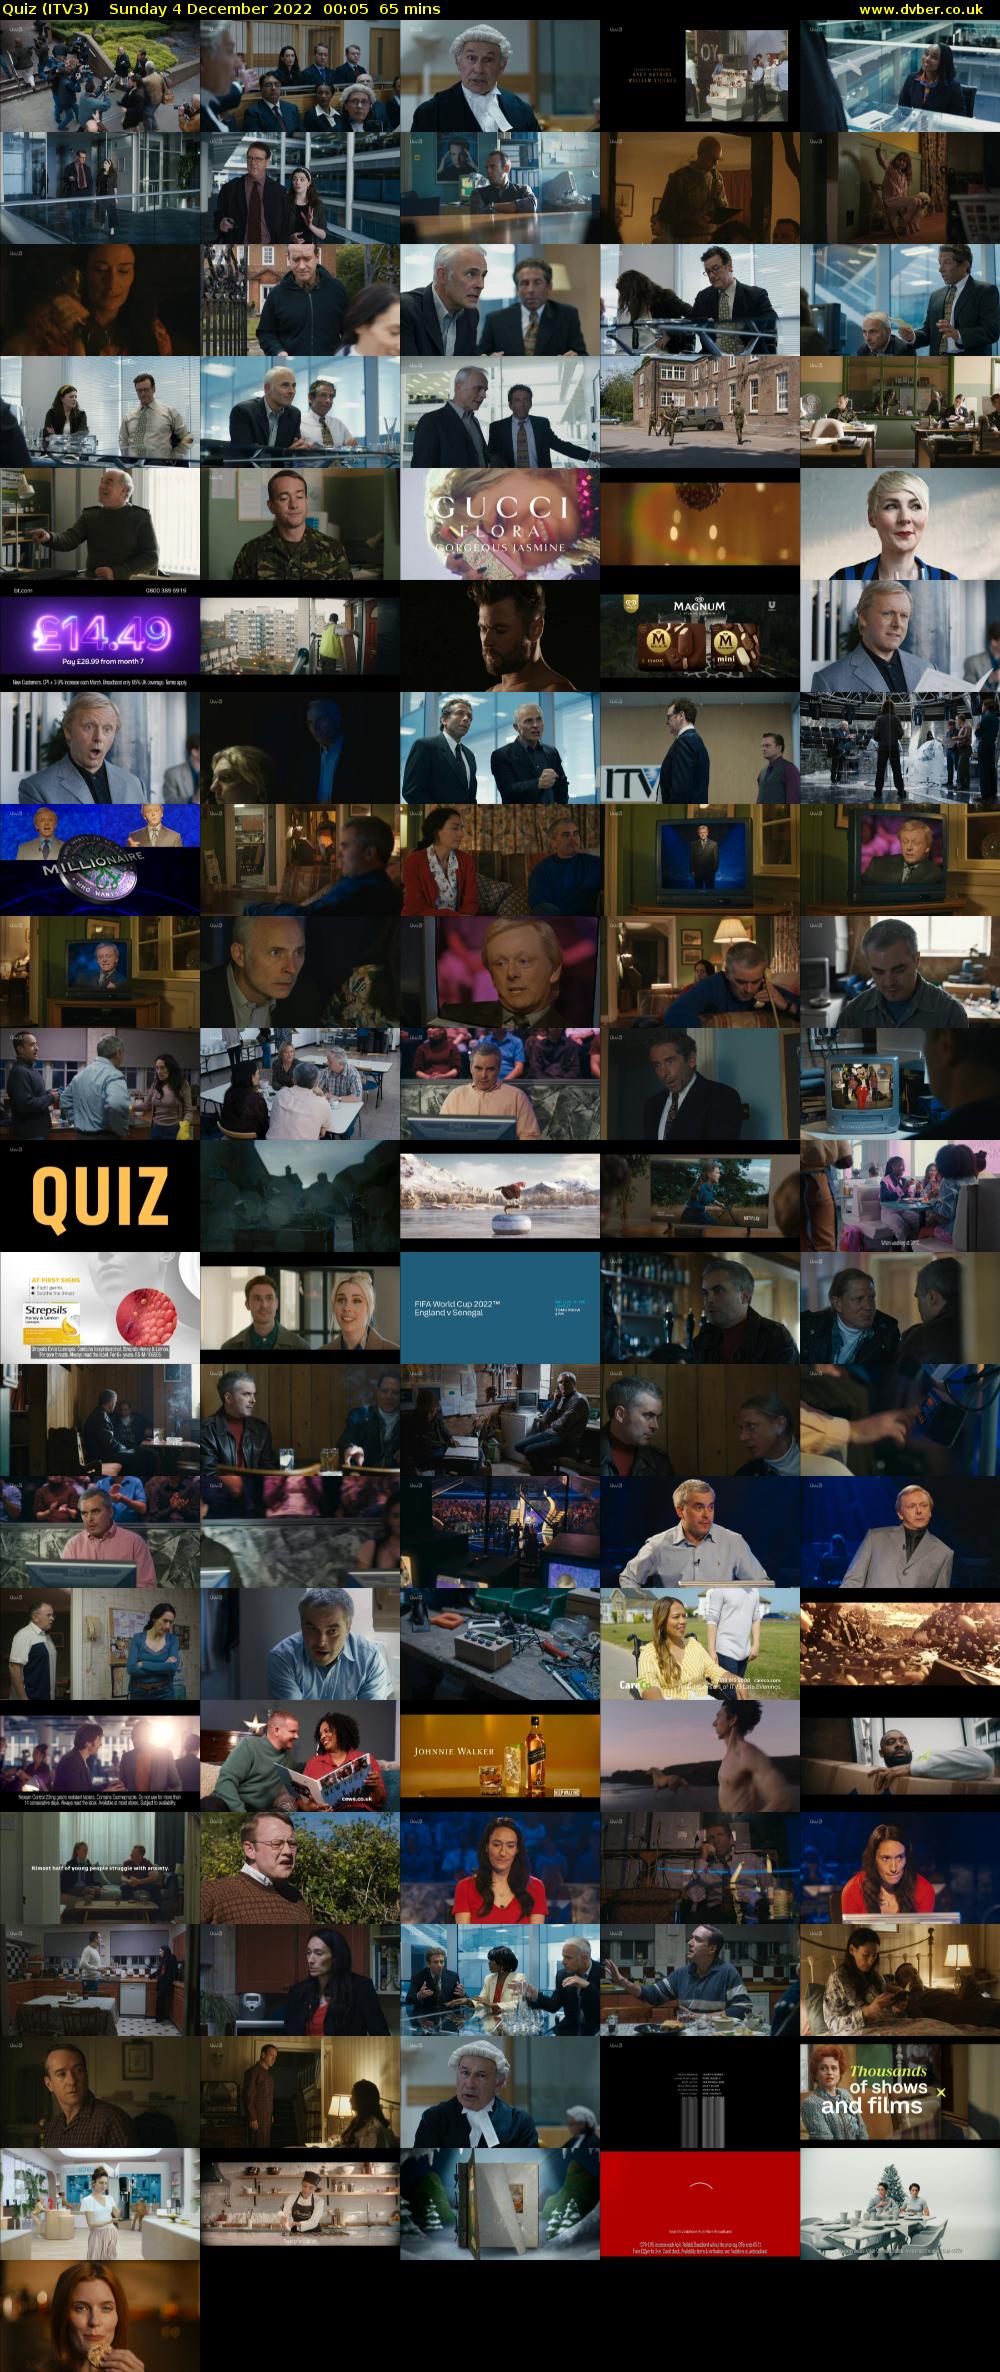 Quiz (ITV3) Sunday 4 December 2022 00:05 - 01:10